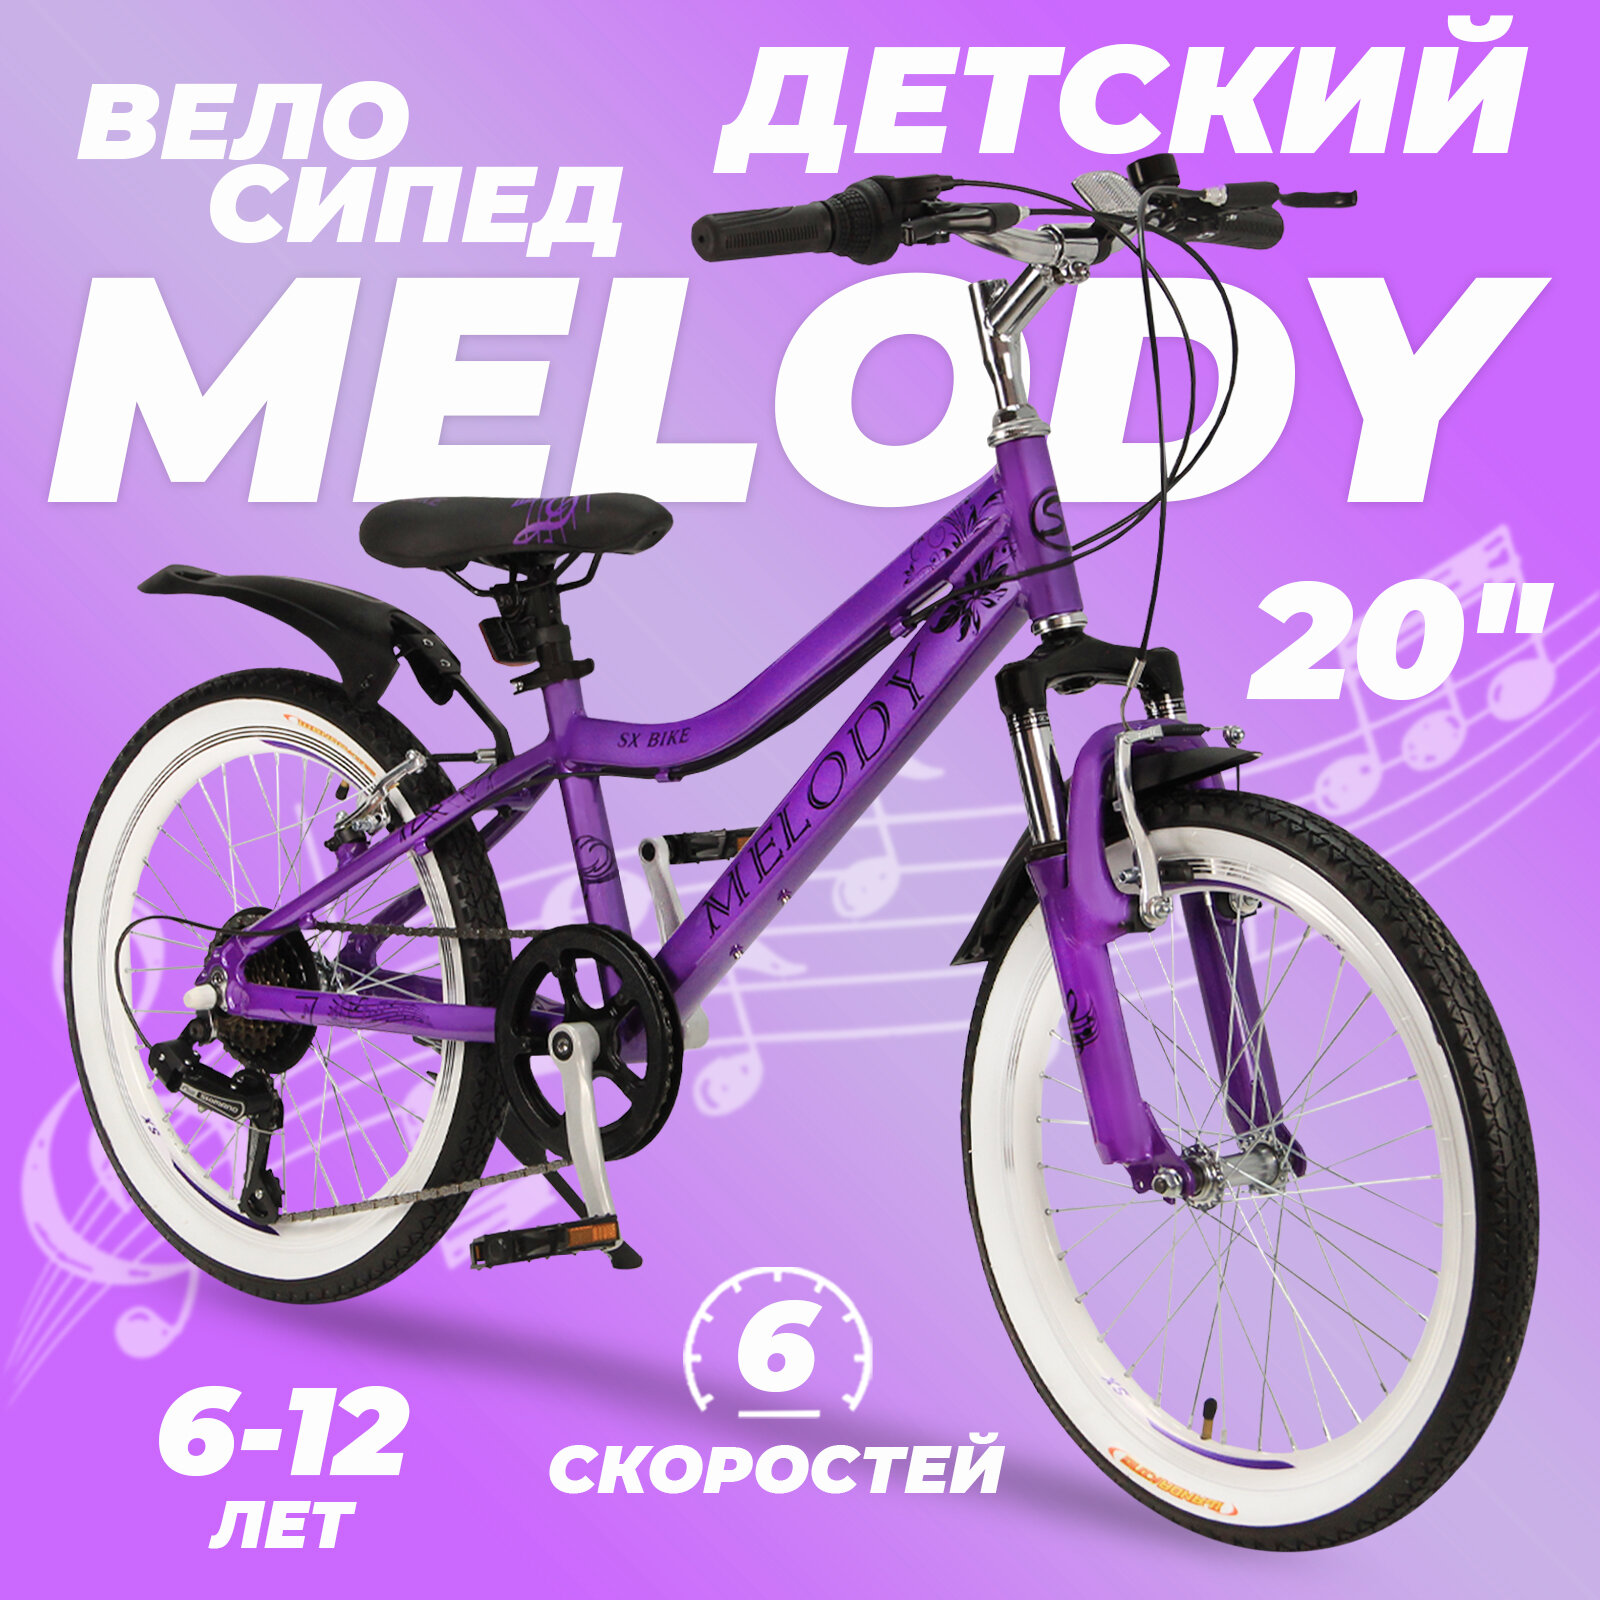 Горный велосипед детский скоростной Melody 20" розовый 6-12 лет 6 скоростей (Shimano tourney)